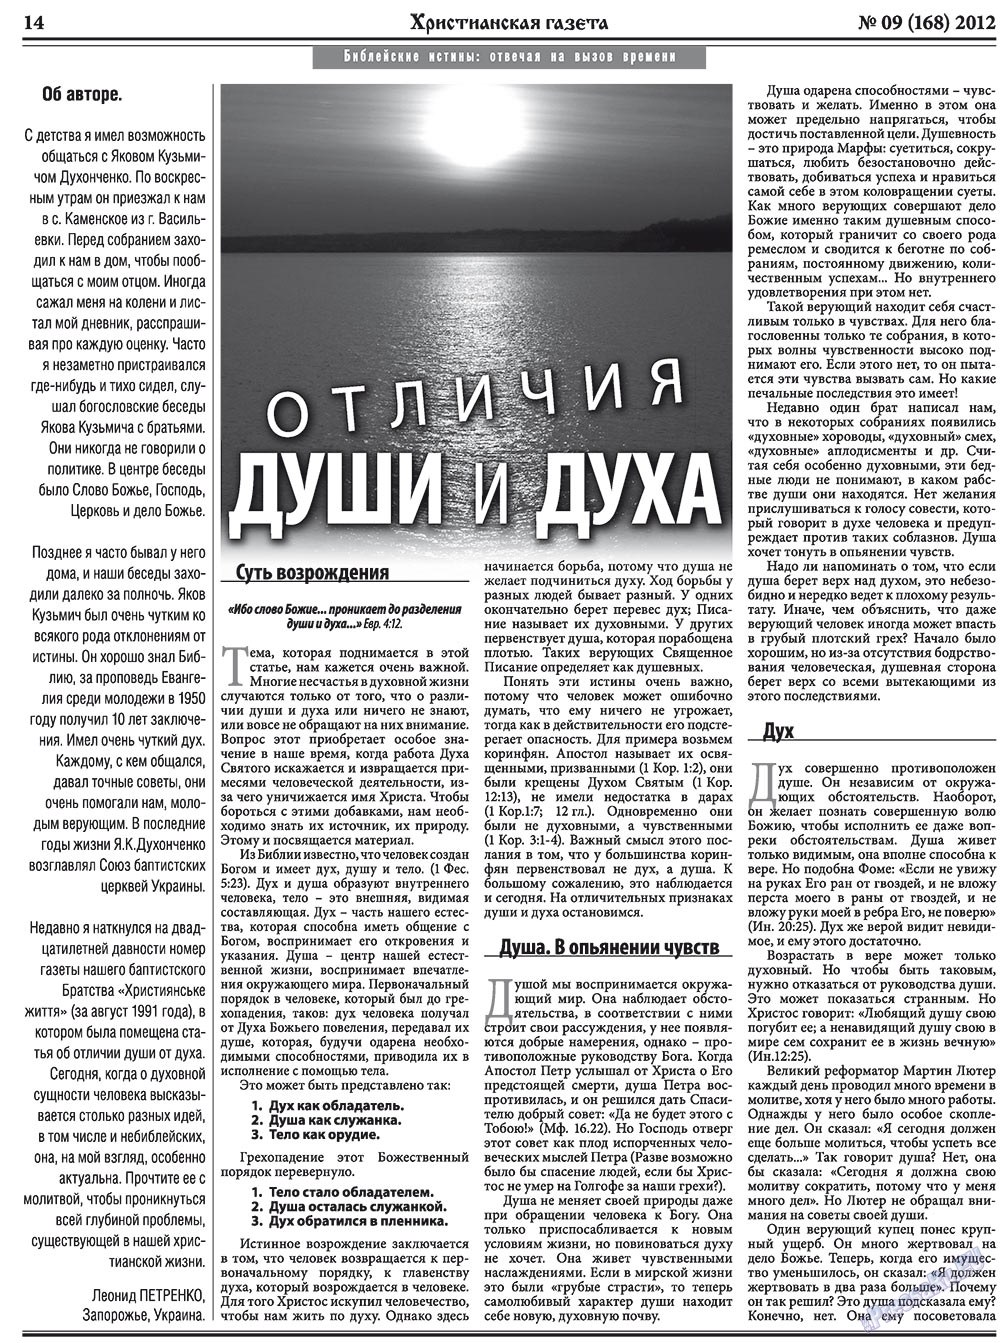 Христианская газета, газета. 2012 №9 стр.22